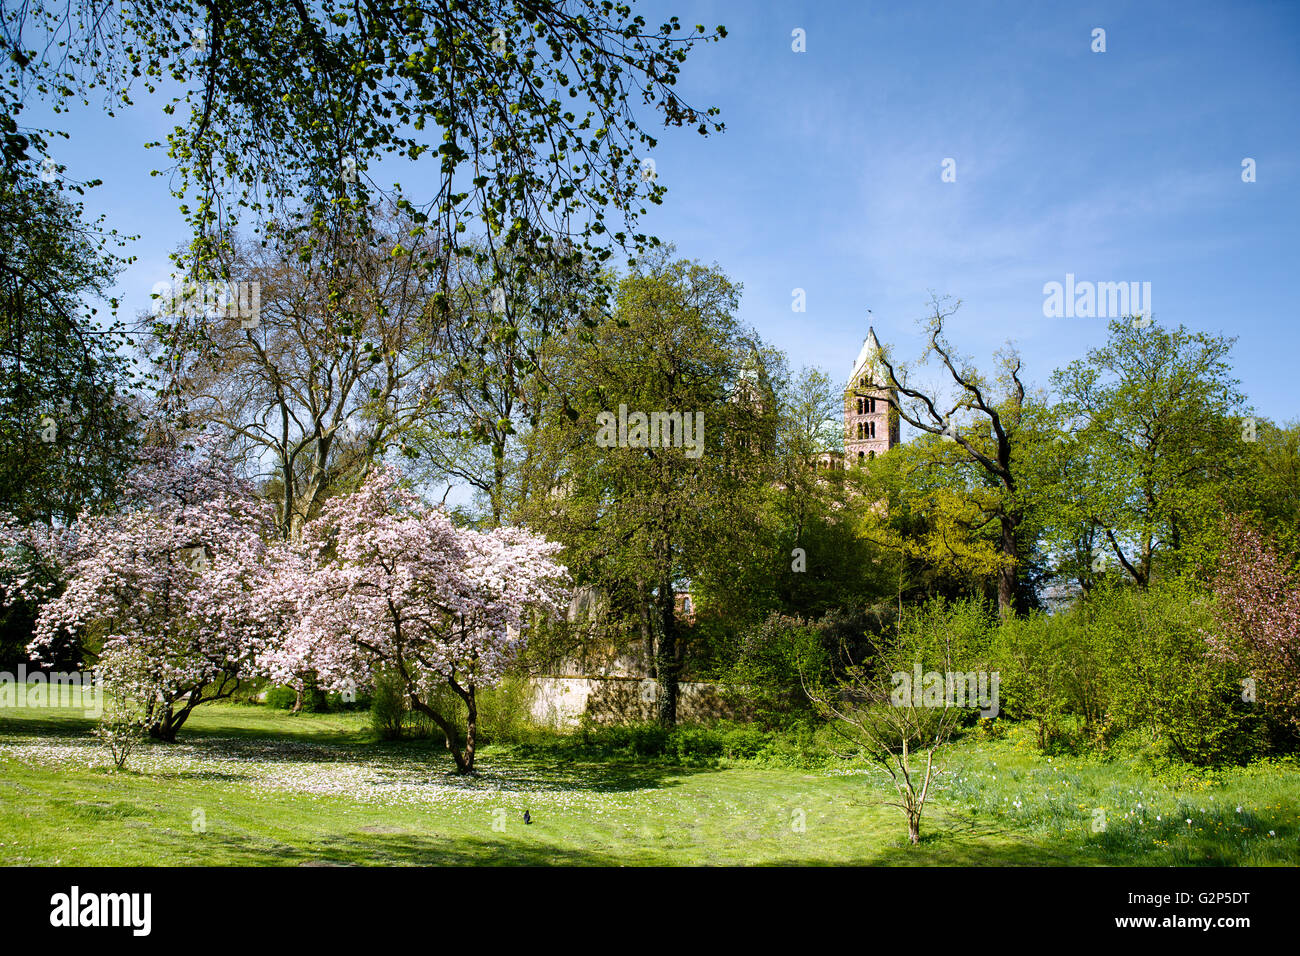 La fioritura degli alberi di Magnolia nella Cattedrale Park in Speyer Germania in primavera con la cattedrale in background Foto Stock